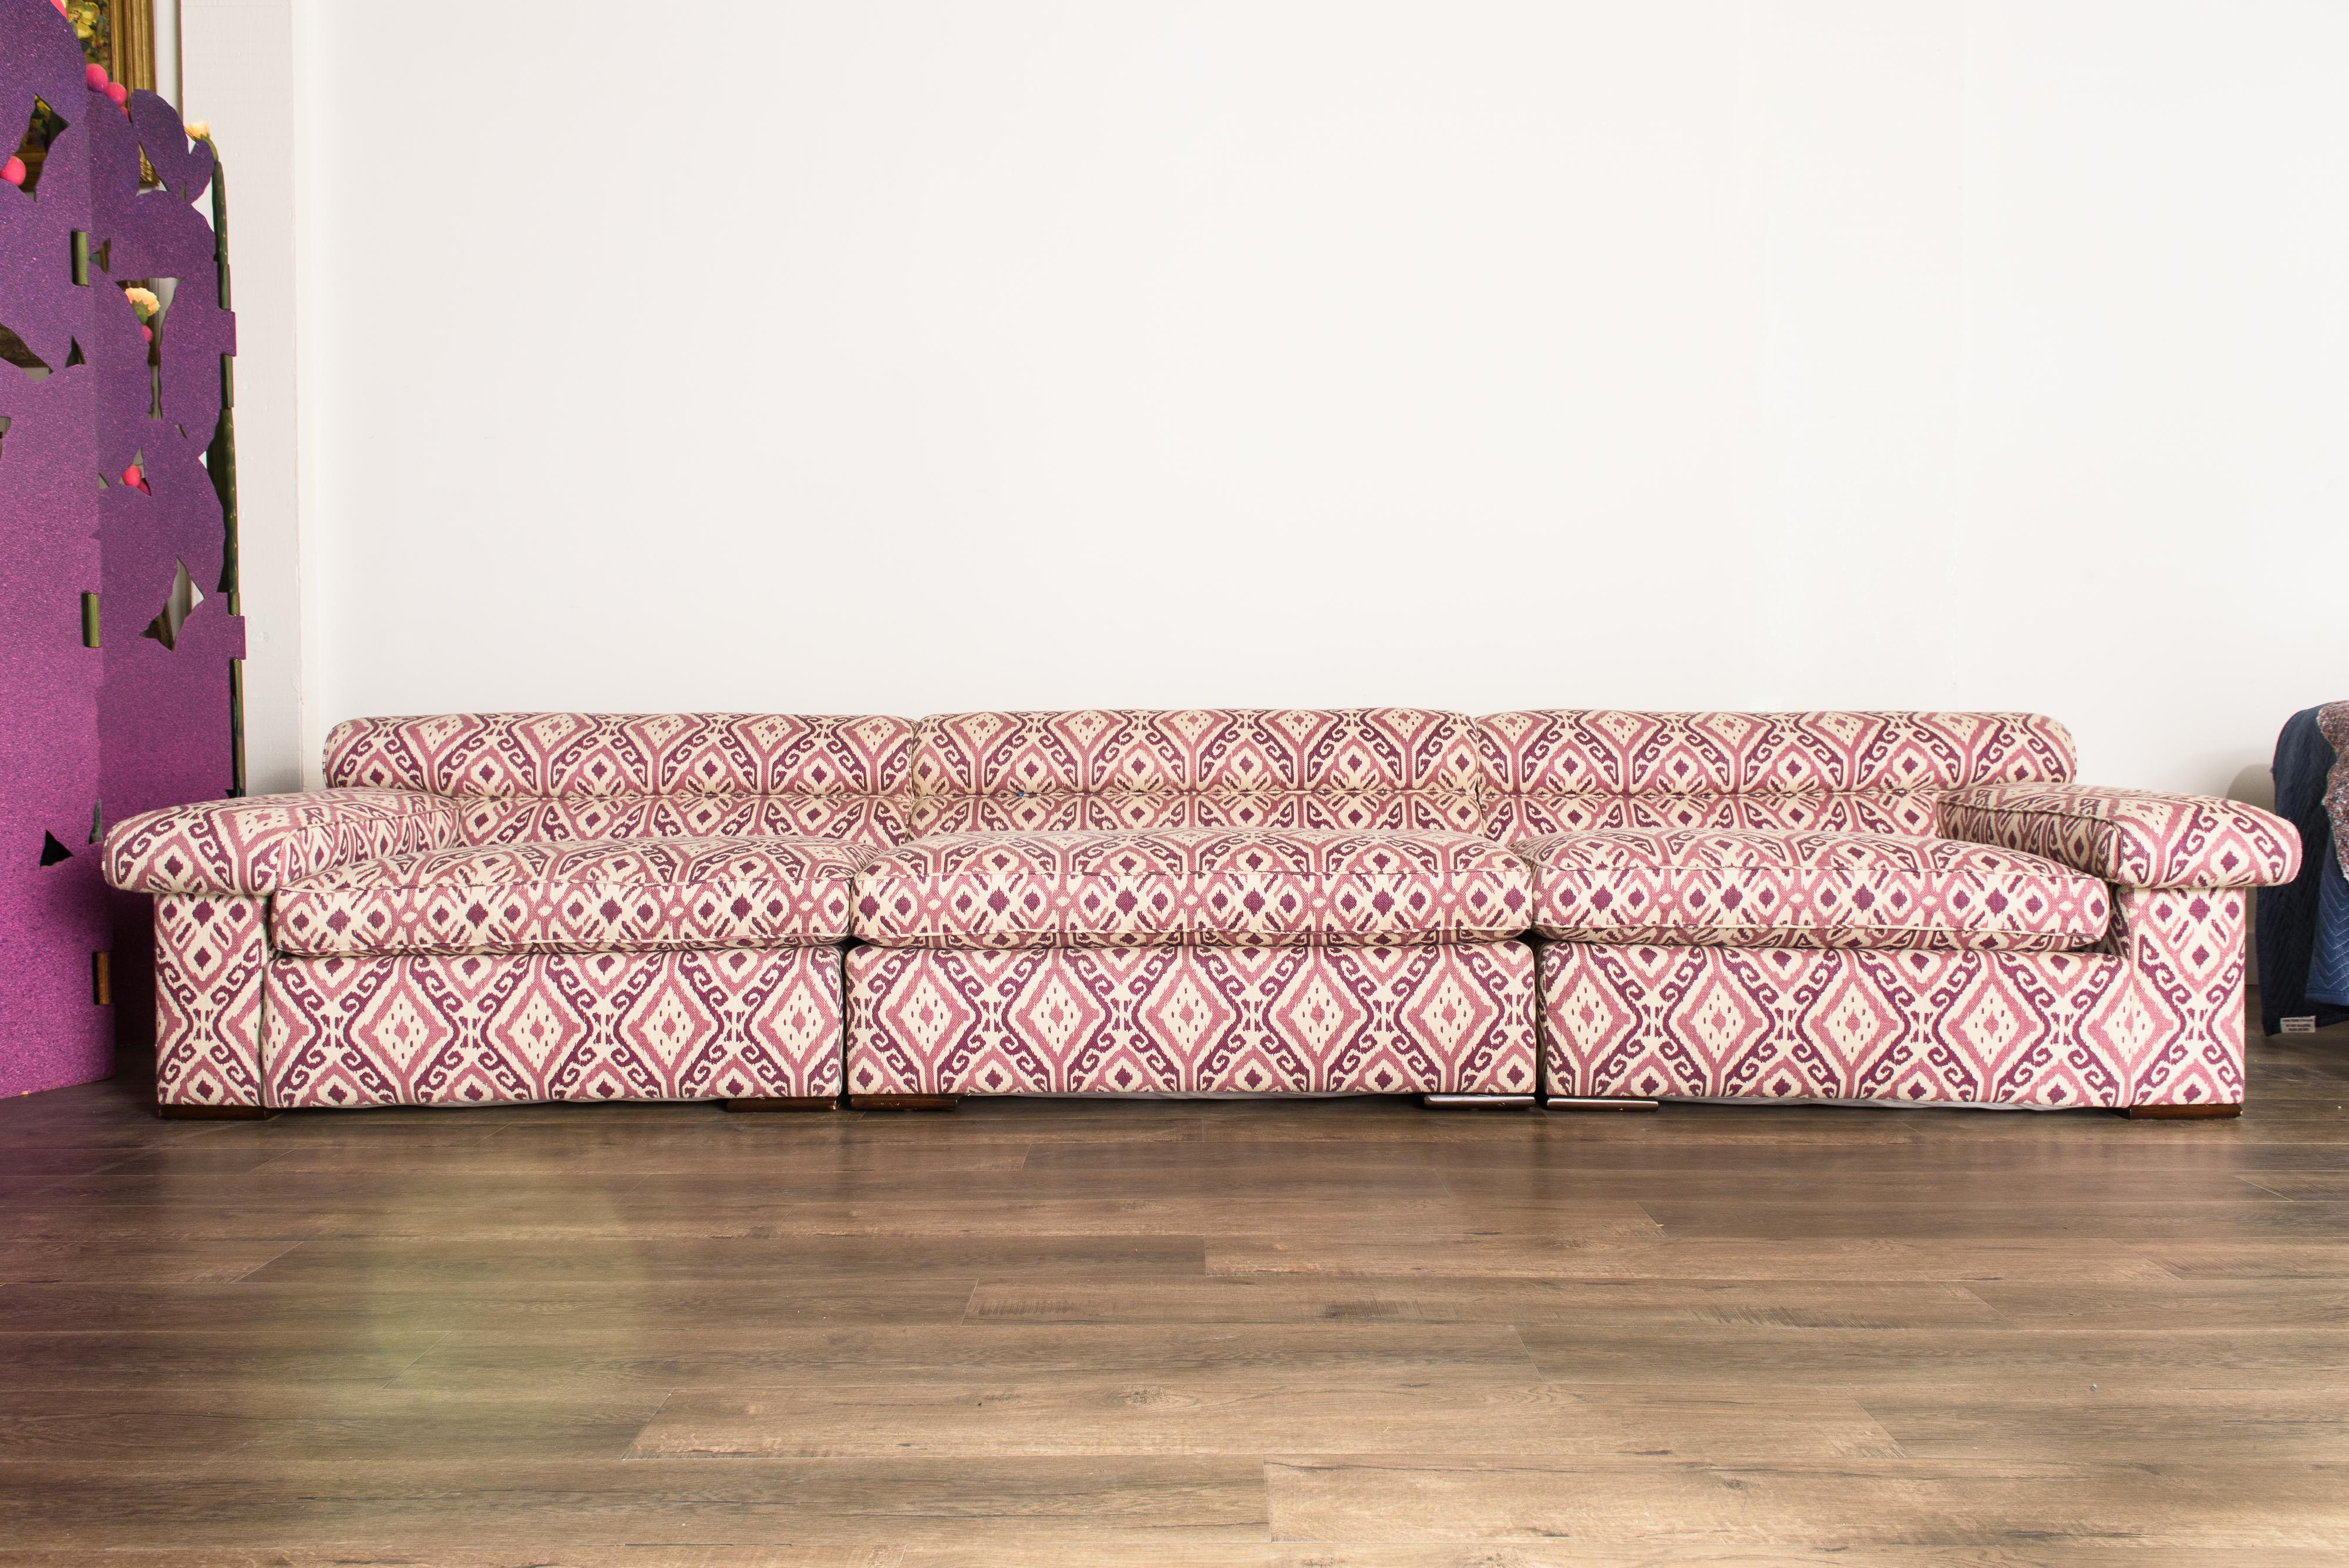 Ce canapé modulaire légèrement incurvé attribué à Paul Laszlo comporte trois sections qui peuvent être disposées de plusieurs façons différentes. Il est remeublé dans un magnifique tissu ikat de couleur rose et prune et est en excellent état, comme